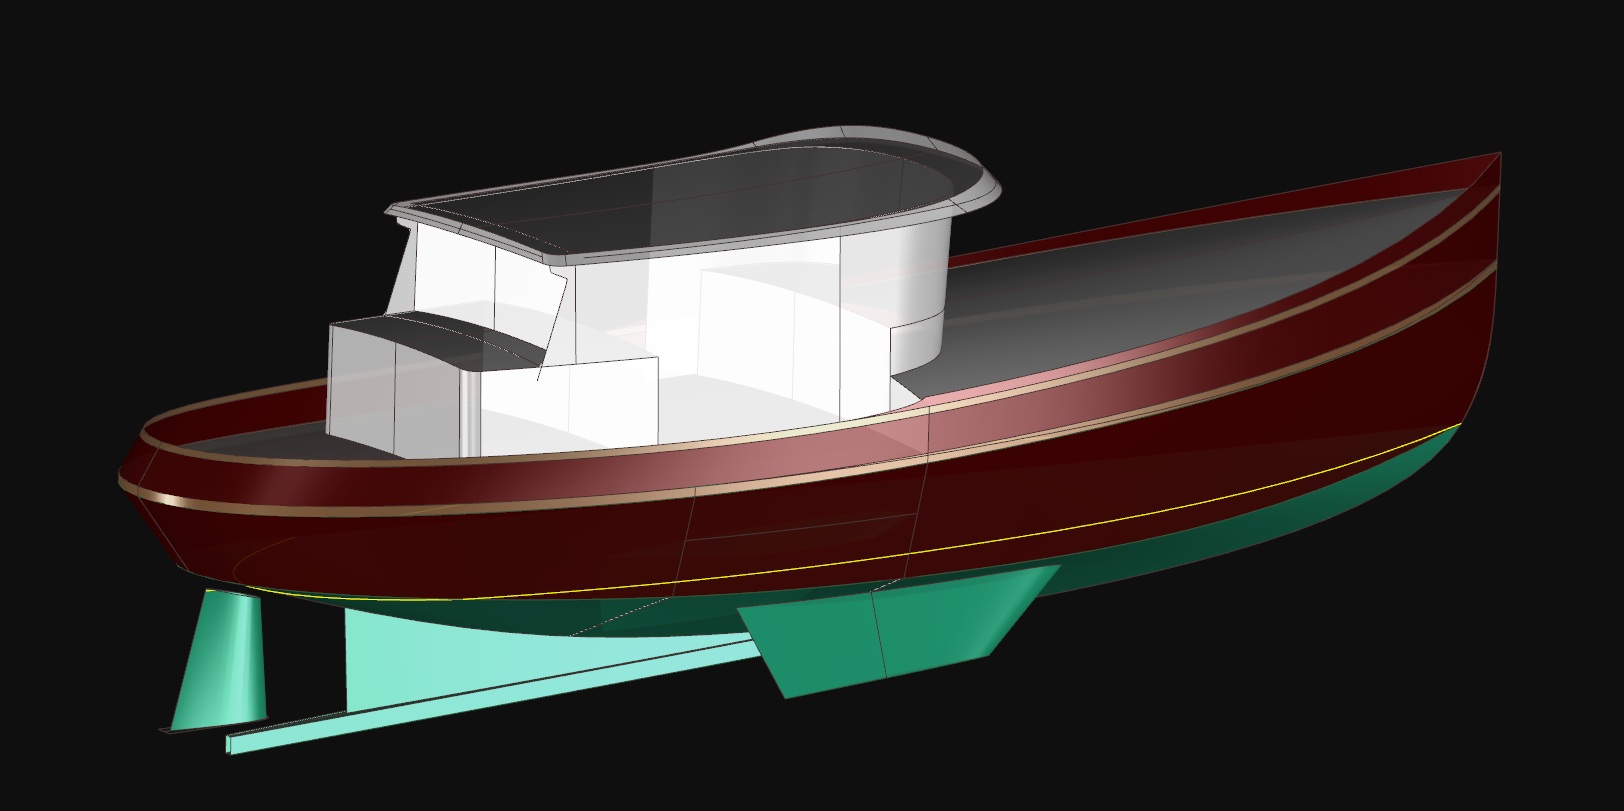 Boojum 43 - A Trawler Yacht by Kasten Marine Design, Inc.